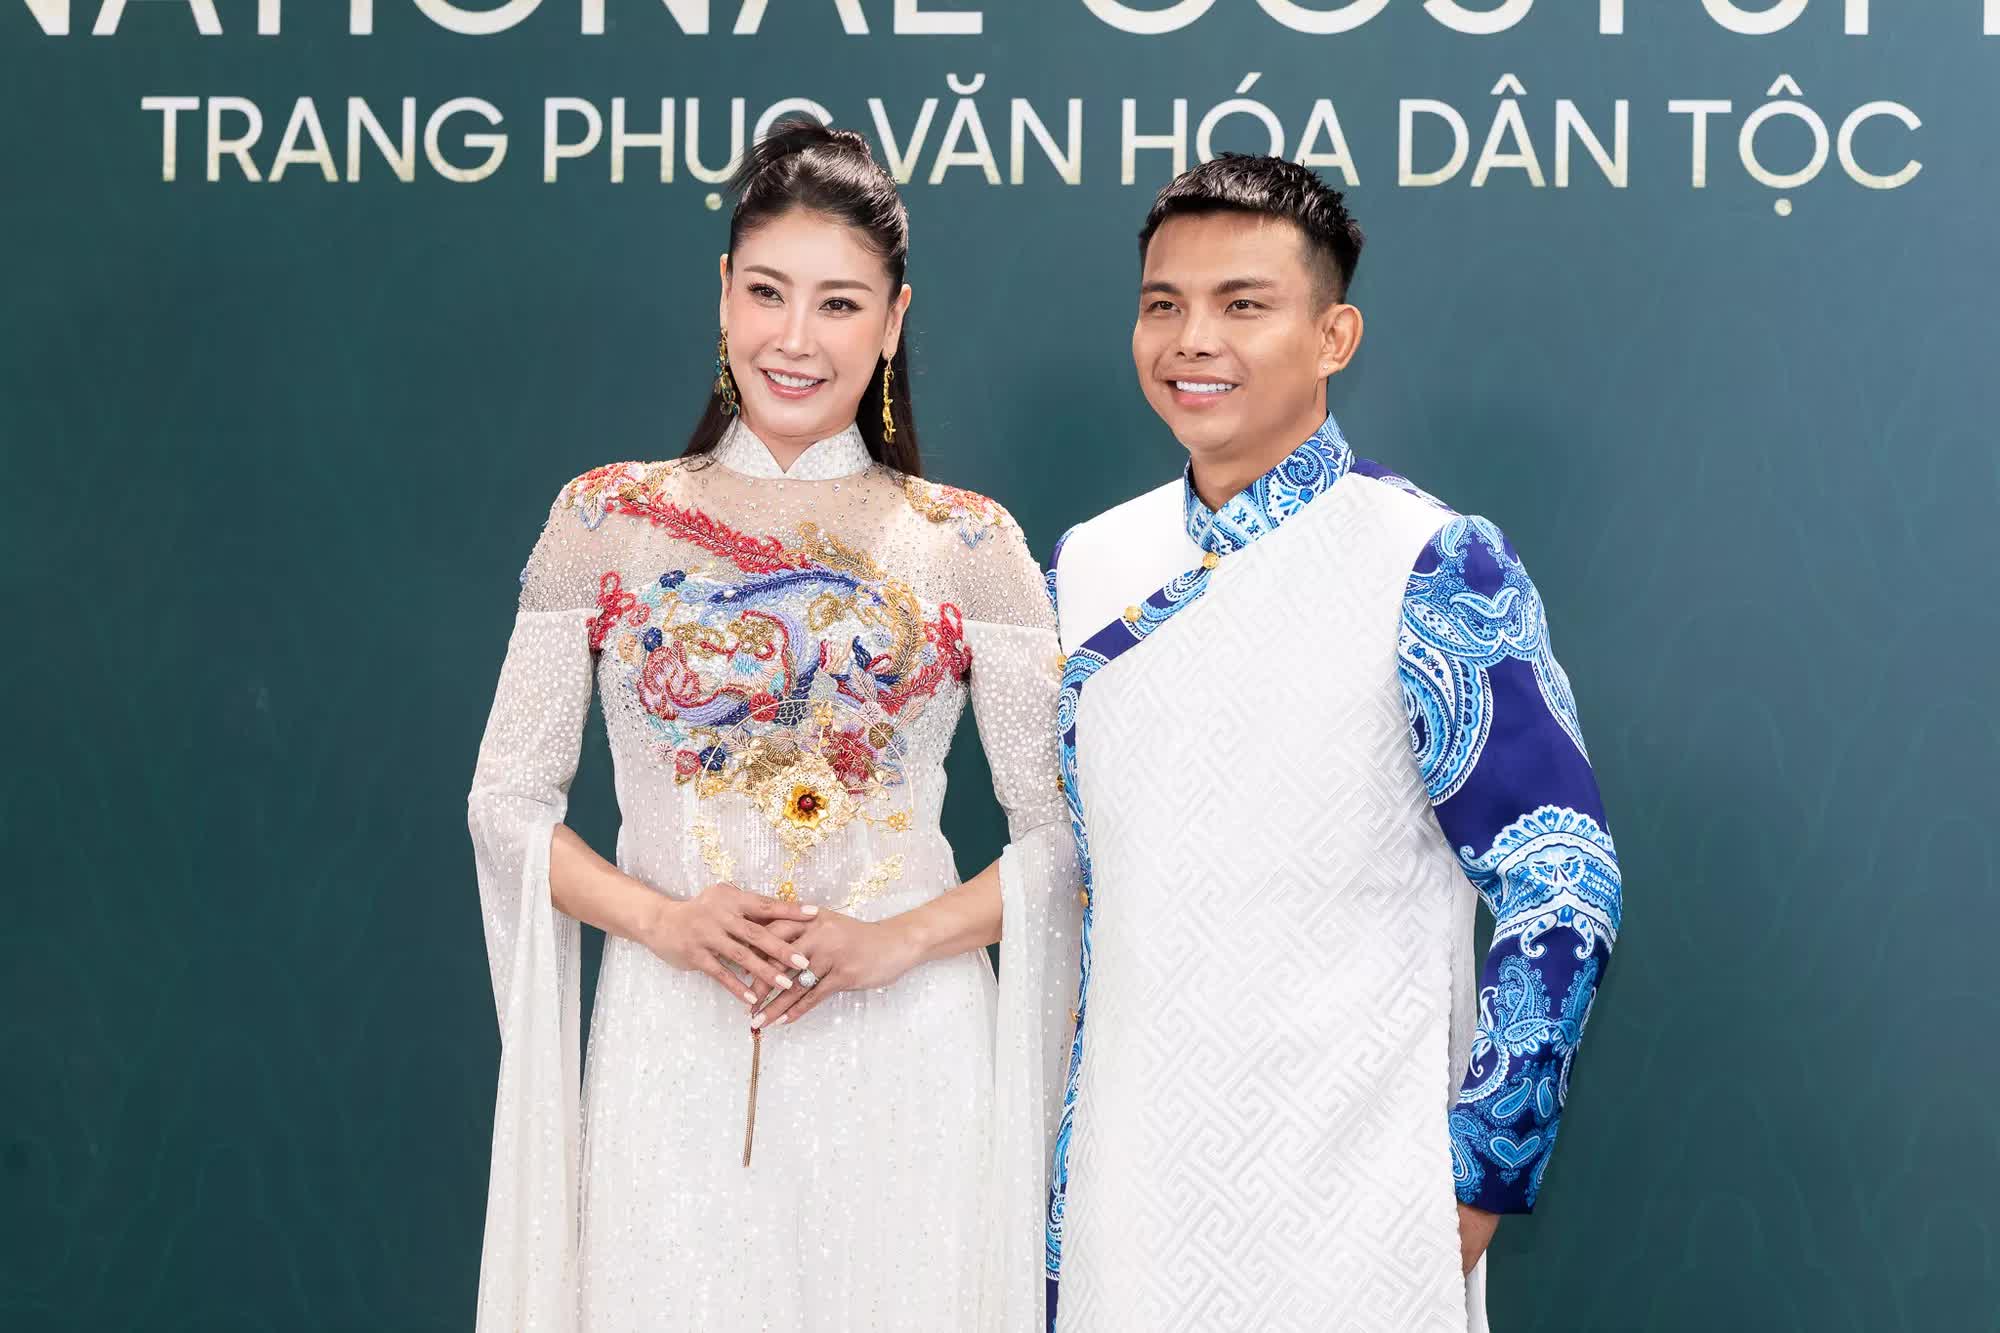 Hoa hậu Thùy Tiên - Mai Phương cùng dàn mỹ nhân quyền lực trên thảm đỏ Hoa hậu Hòa bình Việt Nam  - Ảnh 7.